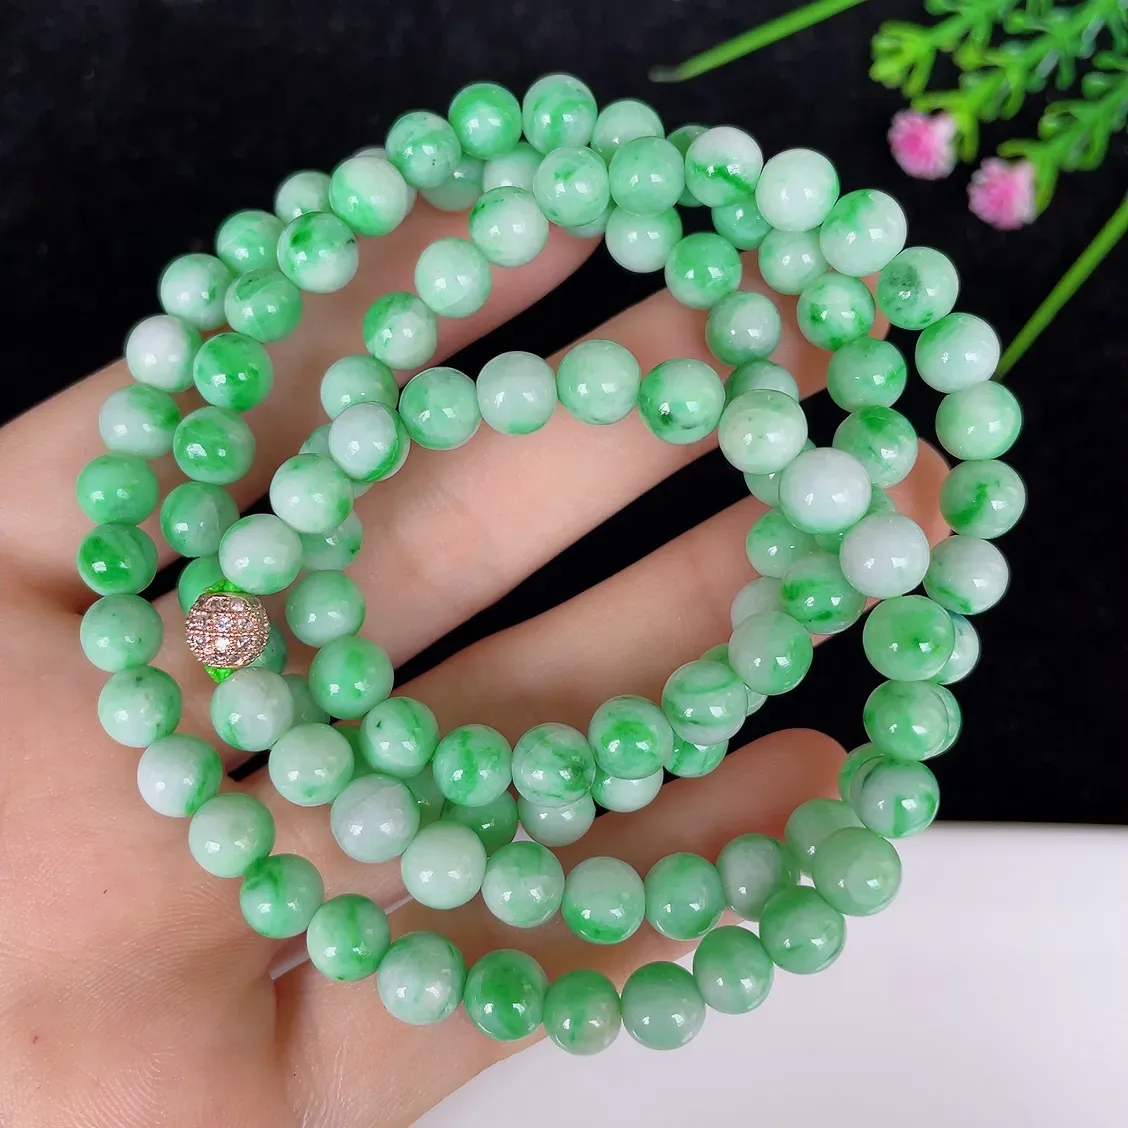 水润飘绿白底青圆珠翡翠项链#110-4664，天然翡翠A货，尺寸取一6.3mm，质地细腻，色泽鲜艳，绿色迷人，佩戴效果佳！！